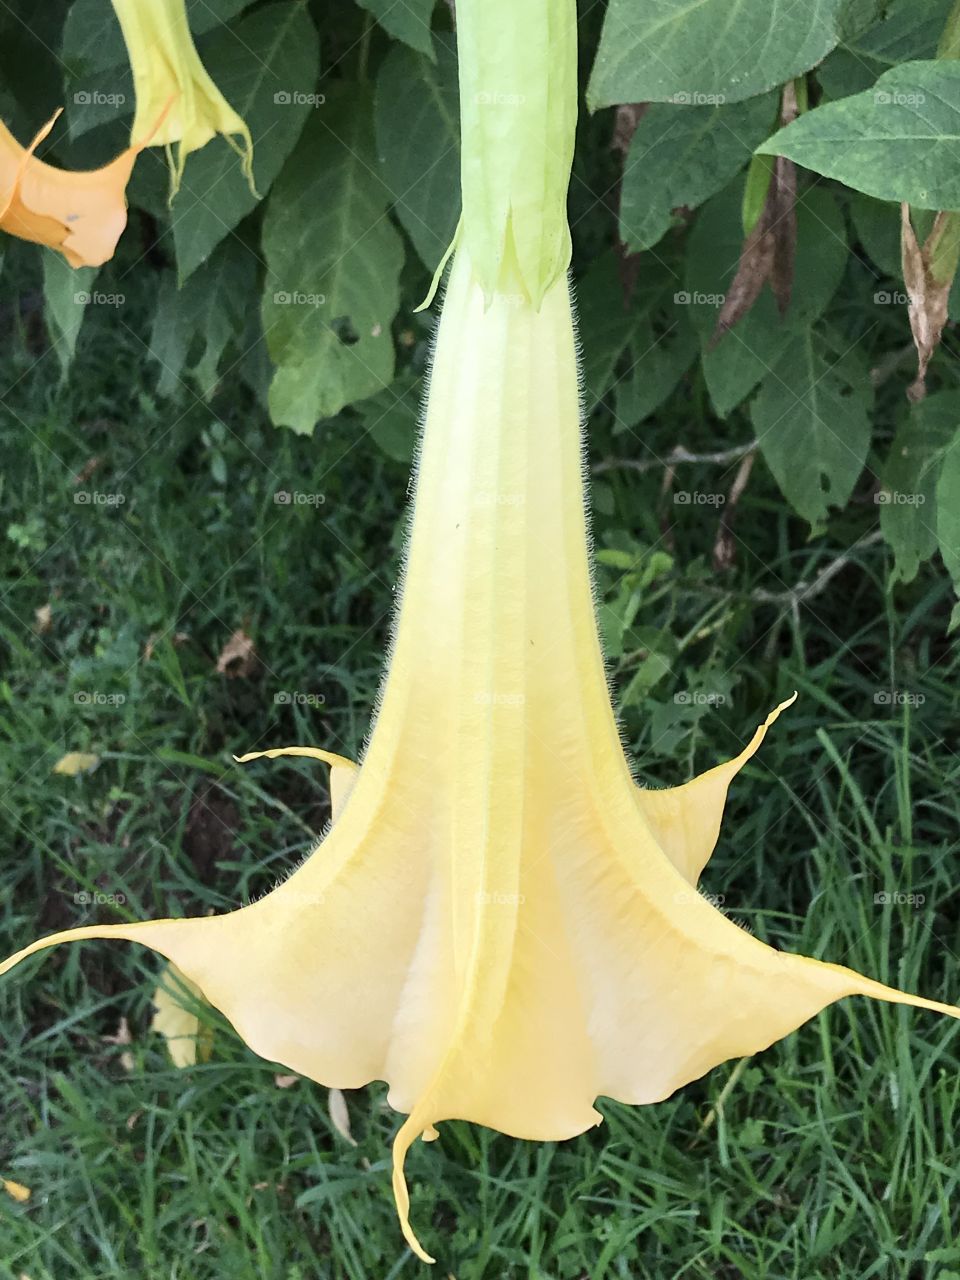 Angel’s trumpet flower 